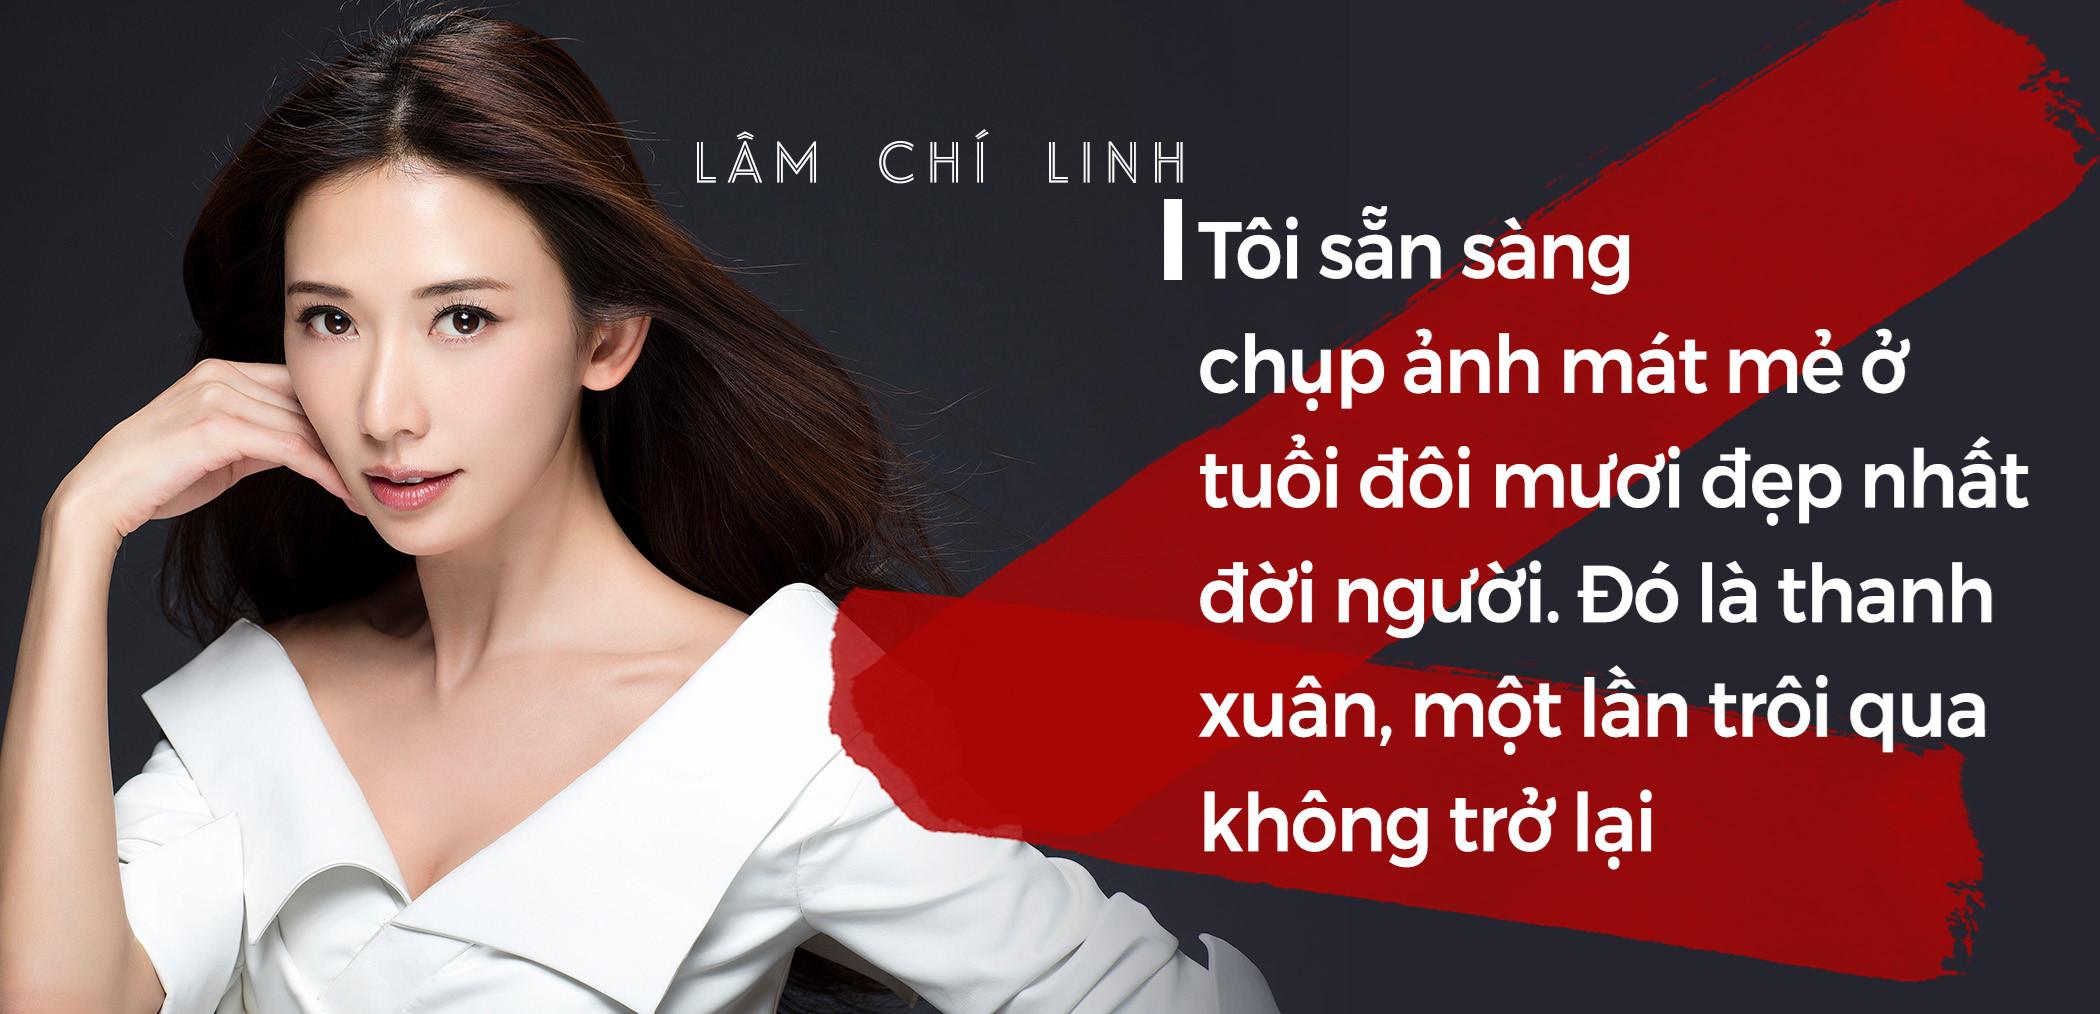 Lâm Chí Linh: Hoa hậu thân thiện hay chân dài bán dâm nghìn USD?-2